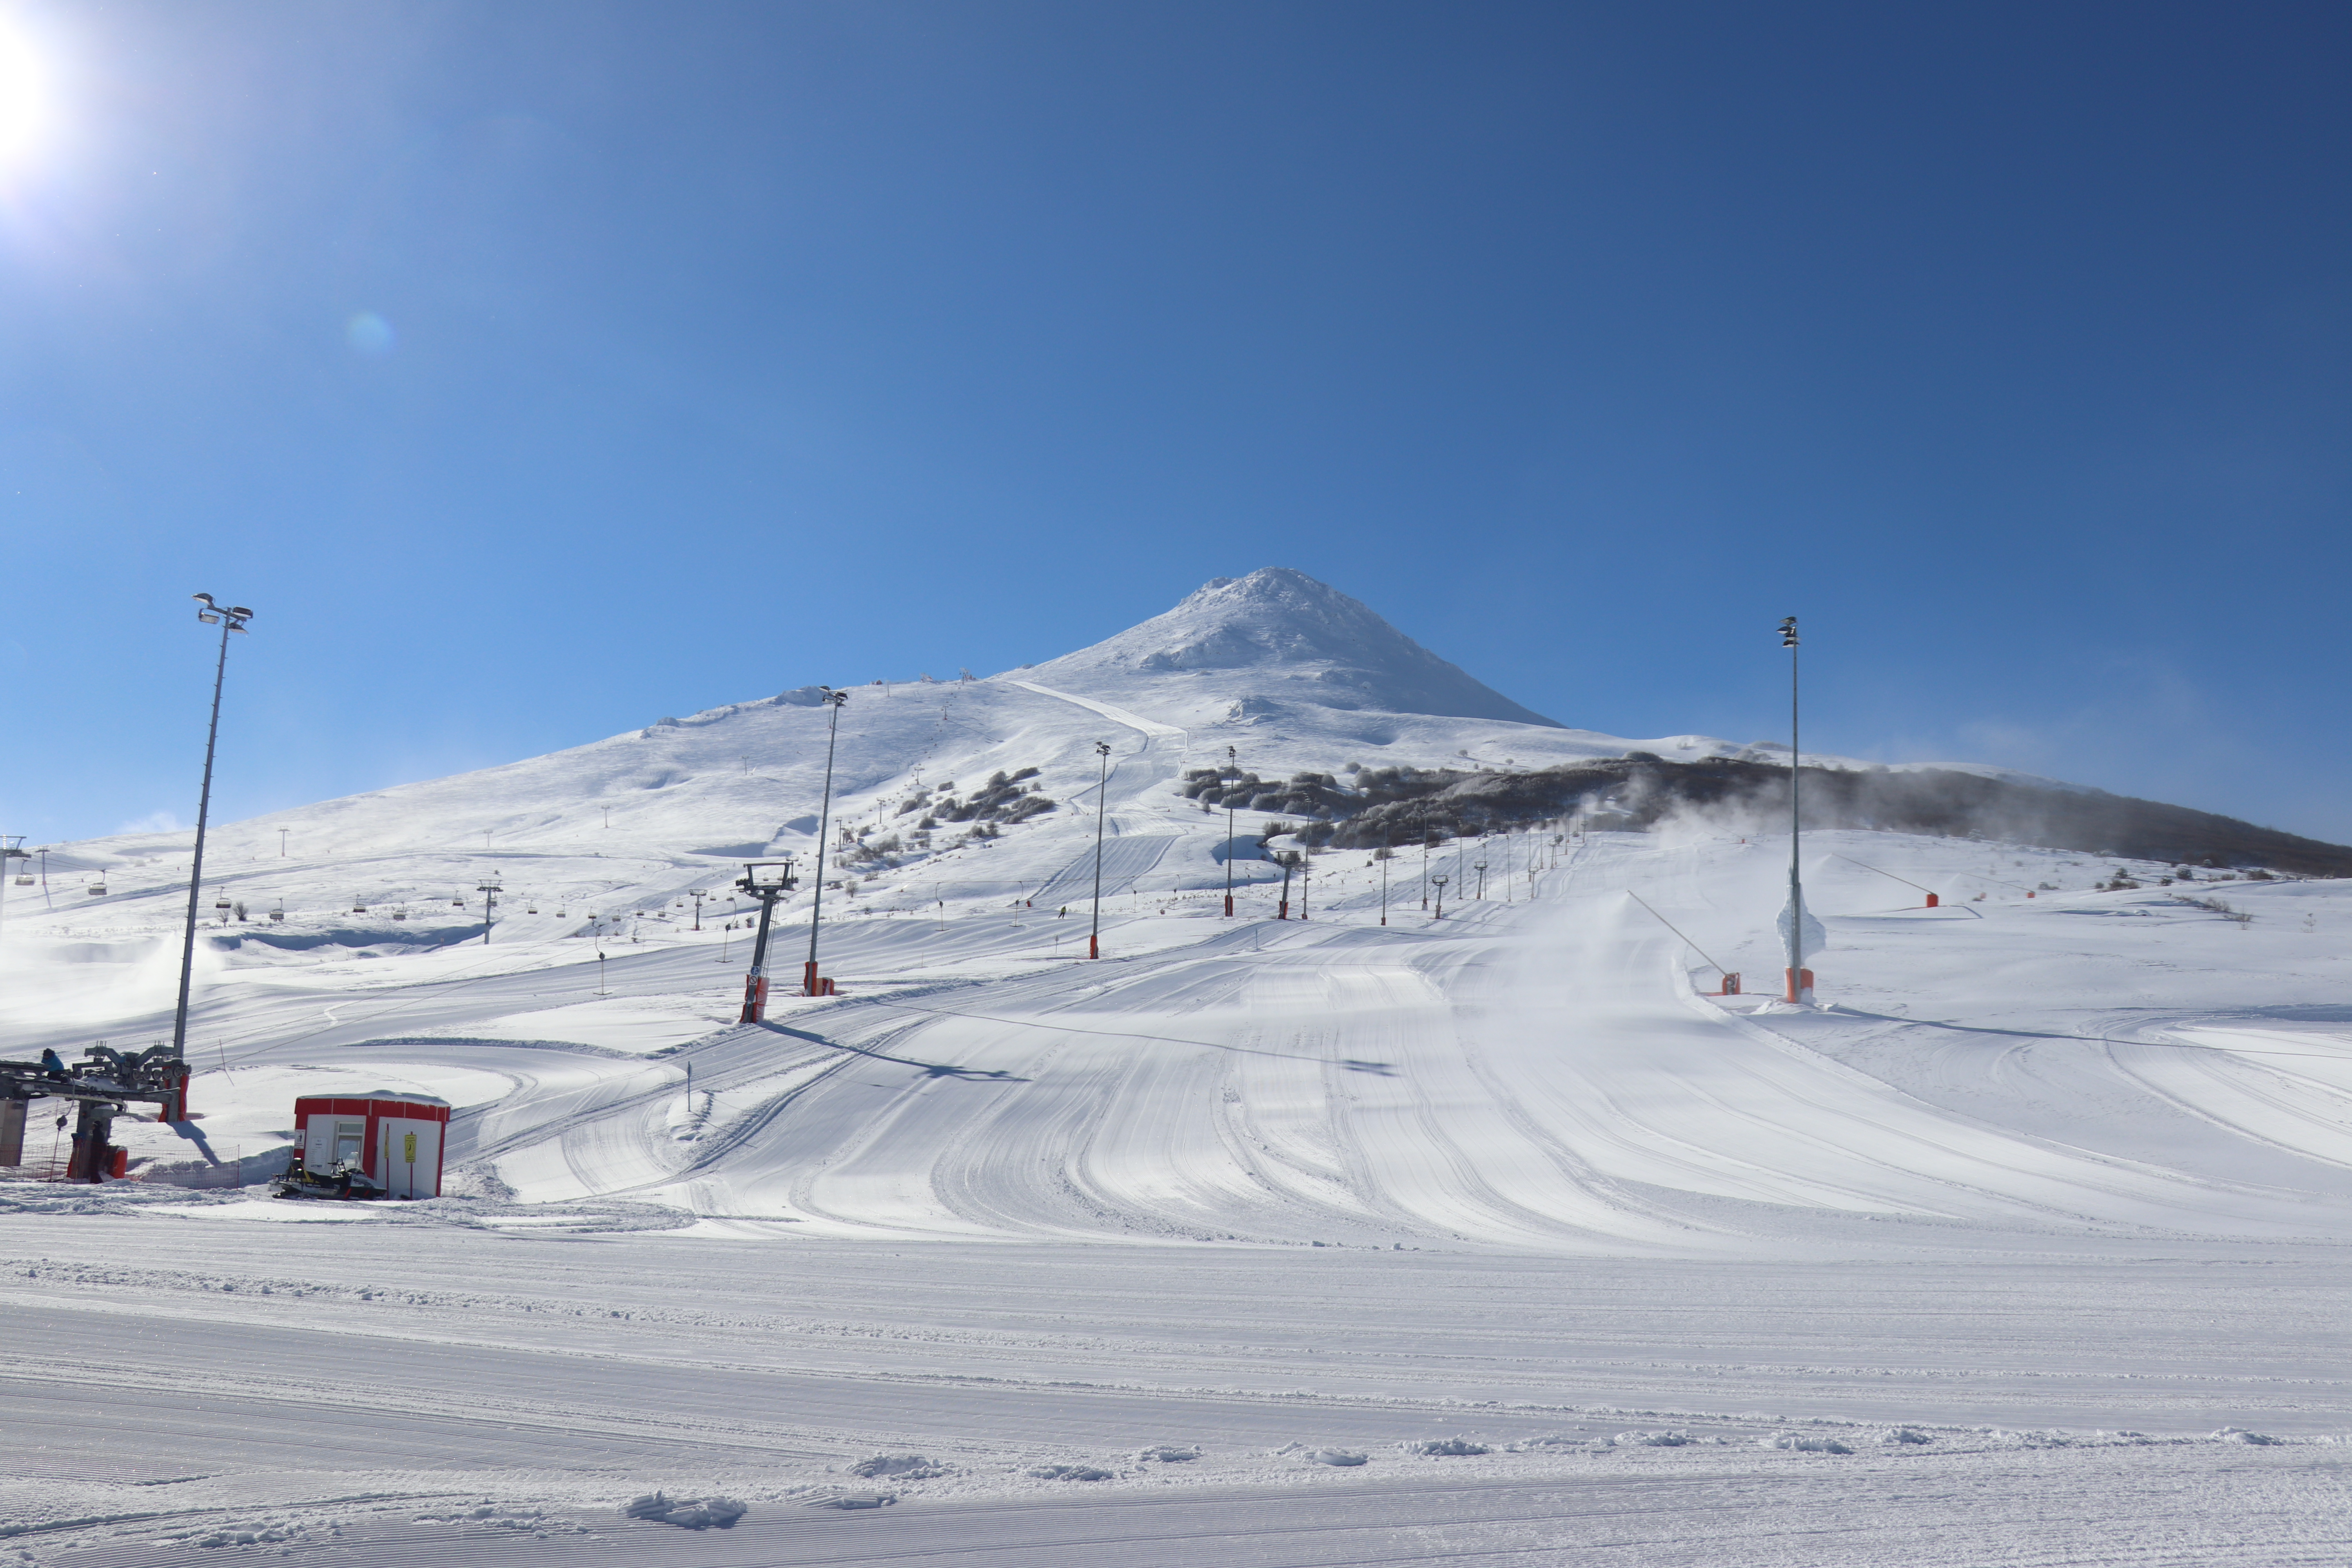 Yıldız Dağı Kayak Merkezi, Yildiz Ski Resort